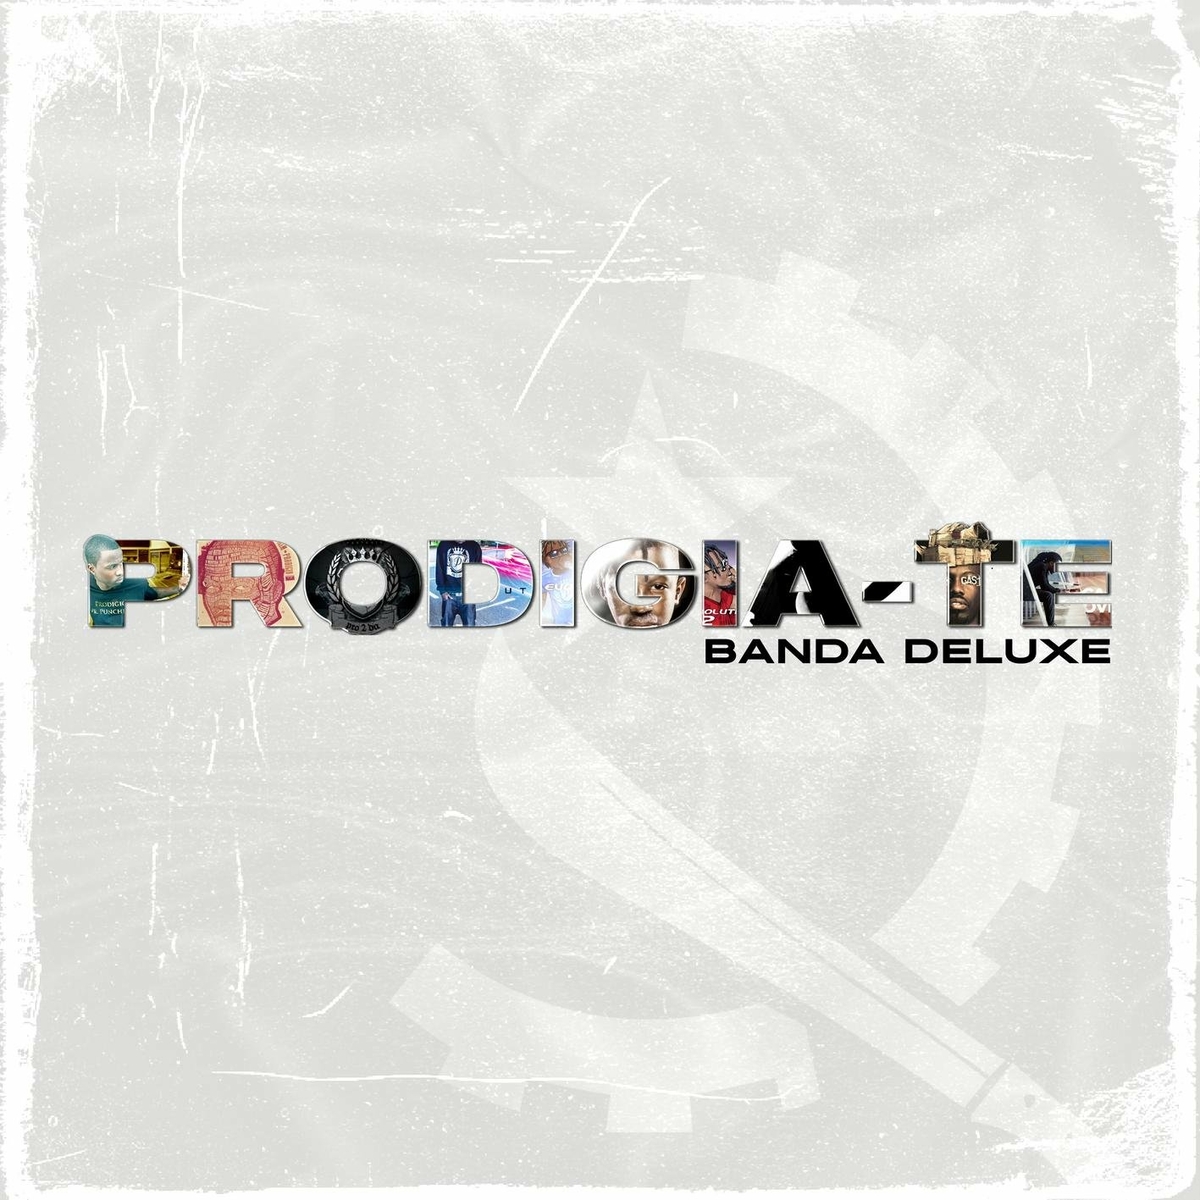 Prodígio – 4 Real (feat. Edgar Songz)